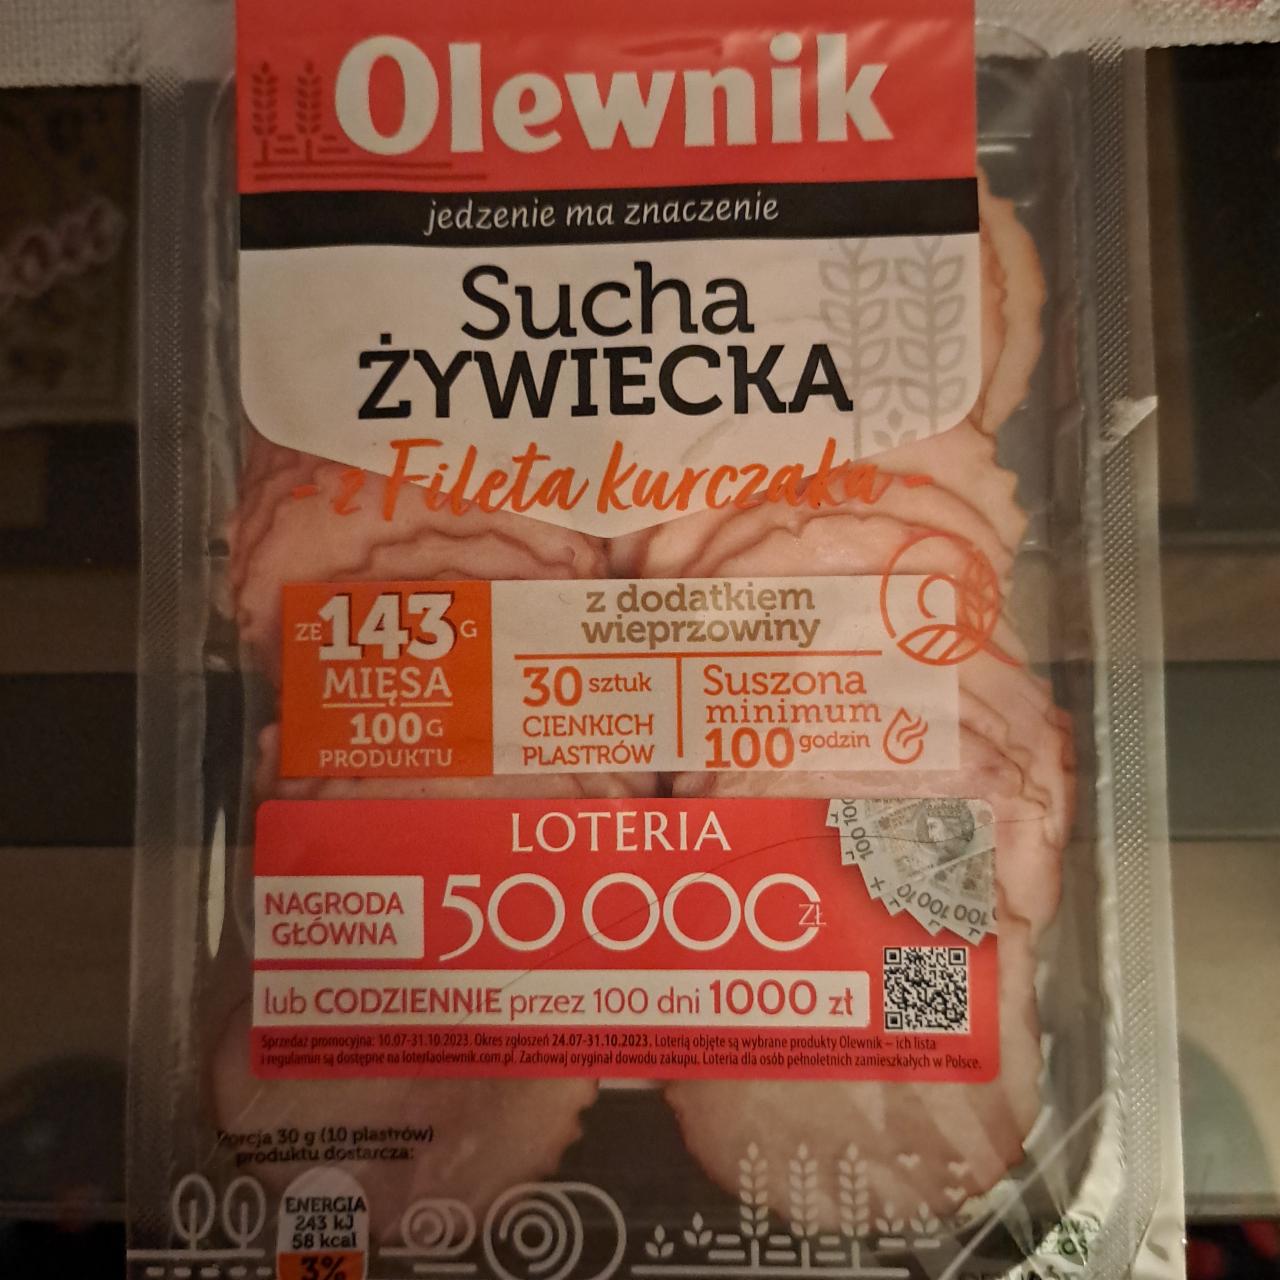 Zdjęcia - Sucha żywiecka z fileta kurczaka z dodatkiem wieprzowiny Olewnik